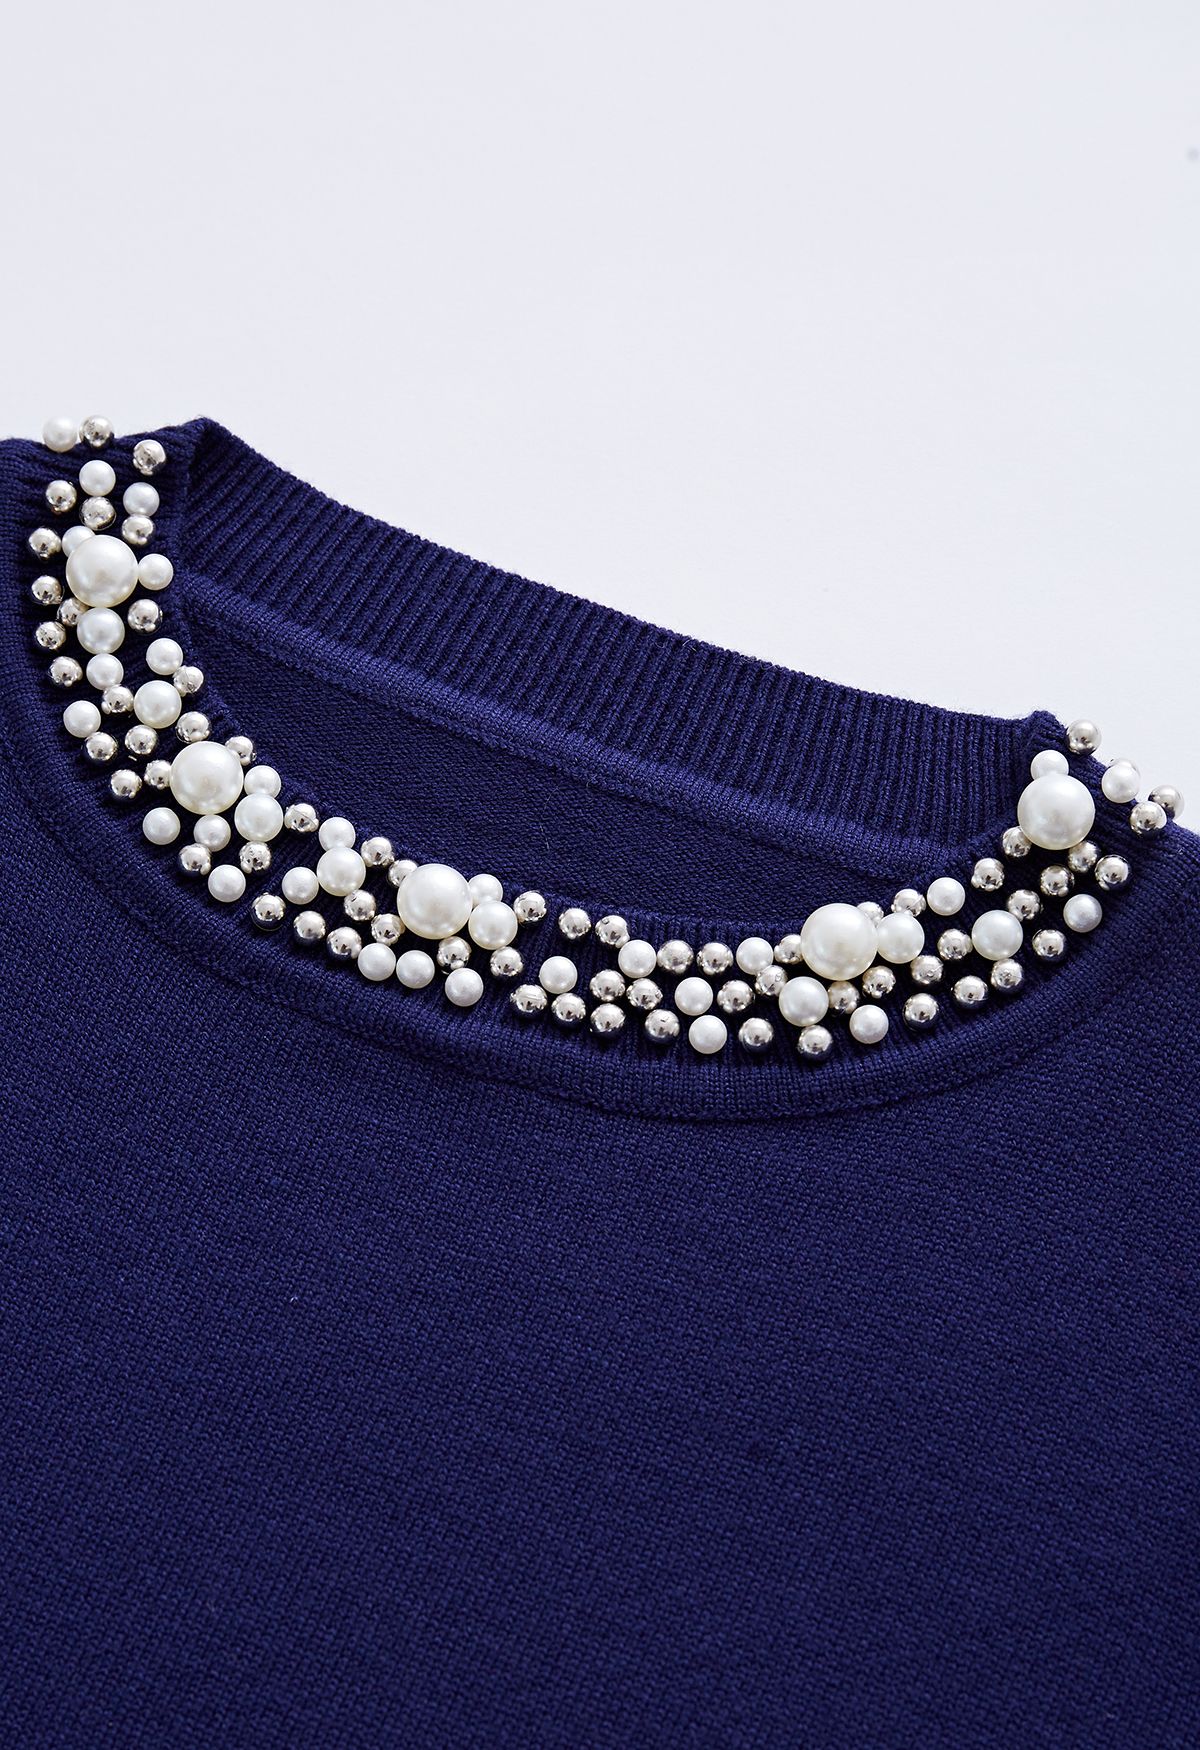 Top in maglia morbida bordato di perle in blu navy